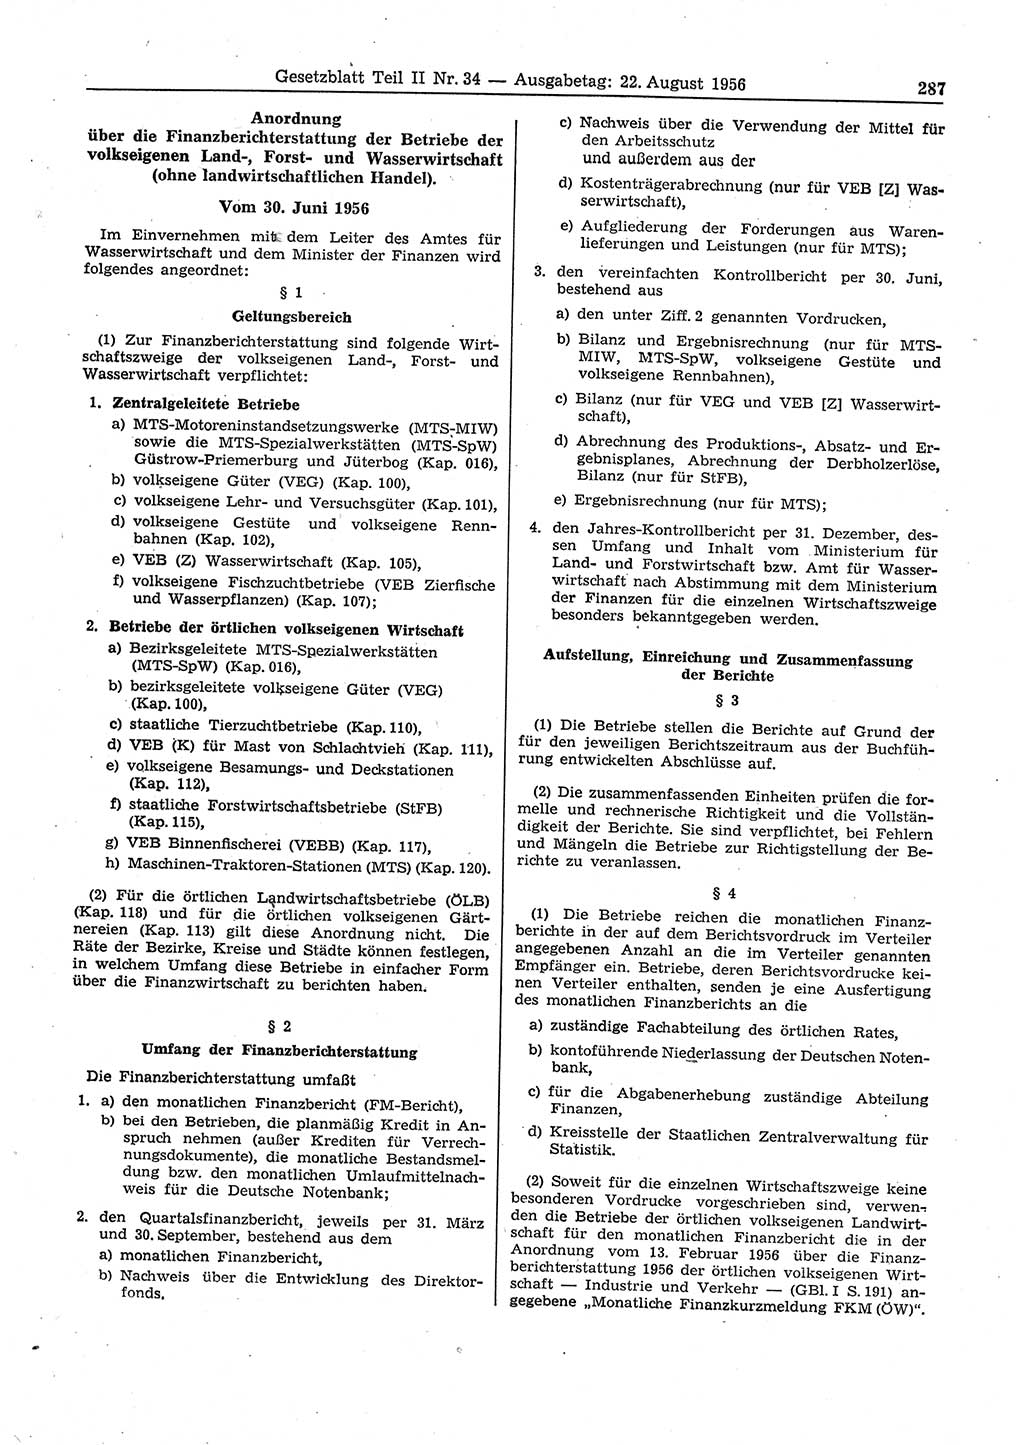 Gesetzblatt (GBl.) der Deutschen Demokratischen Republik (DDR) Teil ⅠⅠ 1956, Seite 287 (GBl. DDR ⅠⅠ 1956, S. 287)